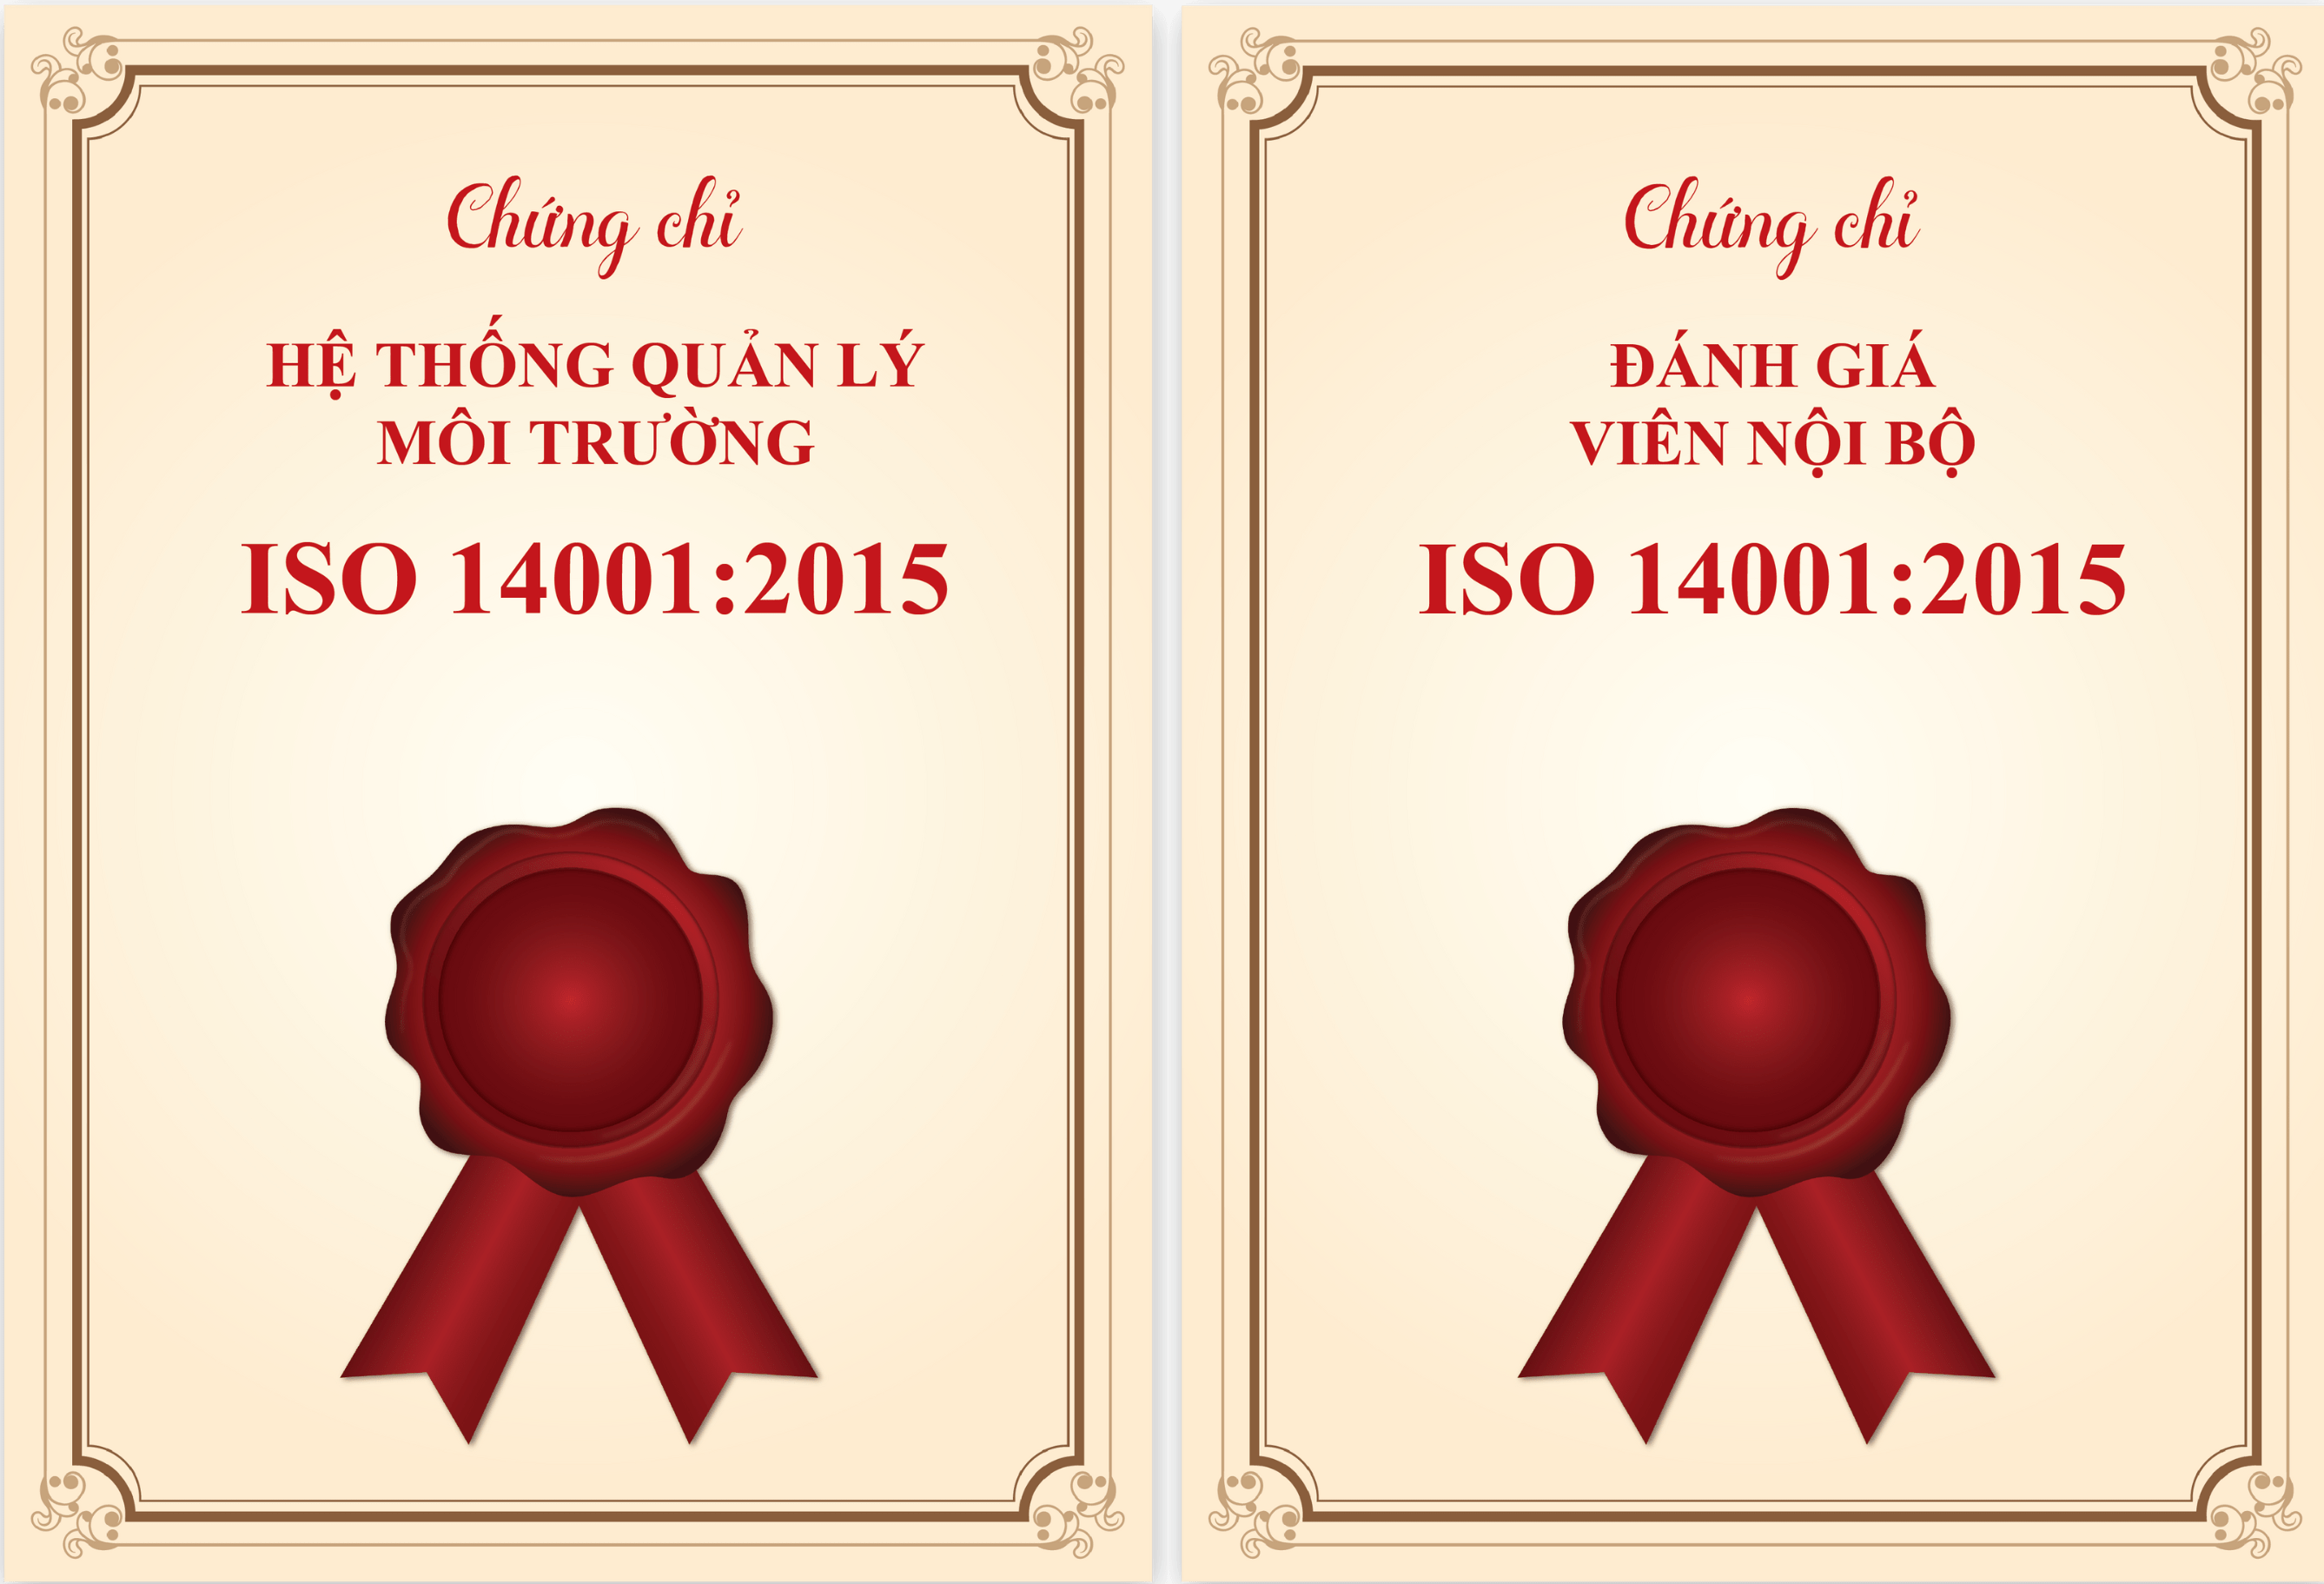 Bộ chứng chỉ khoá Đánh giá viên nội bộ ISO 14001:2015